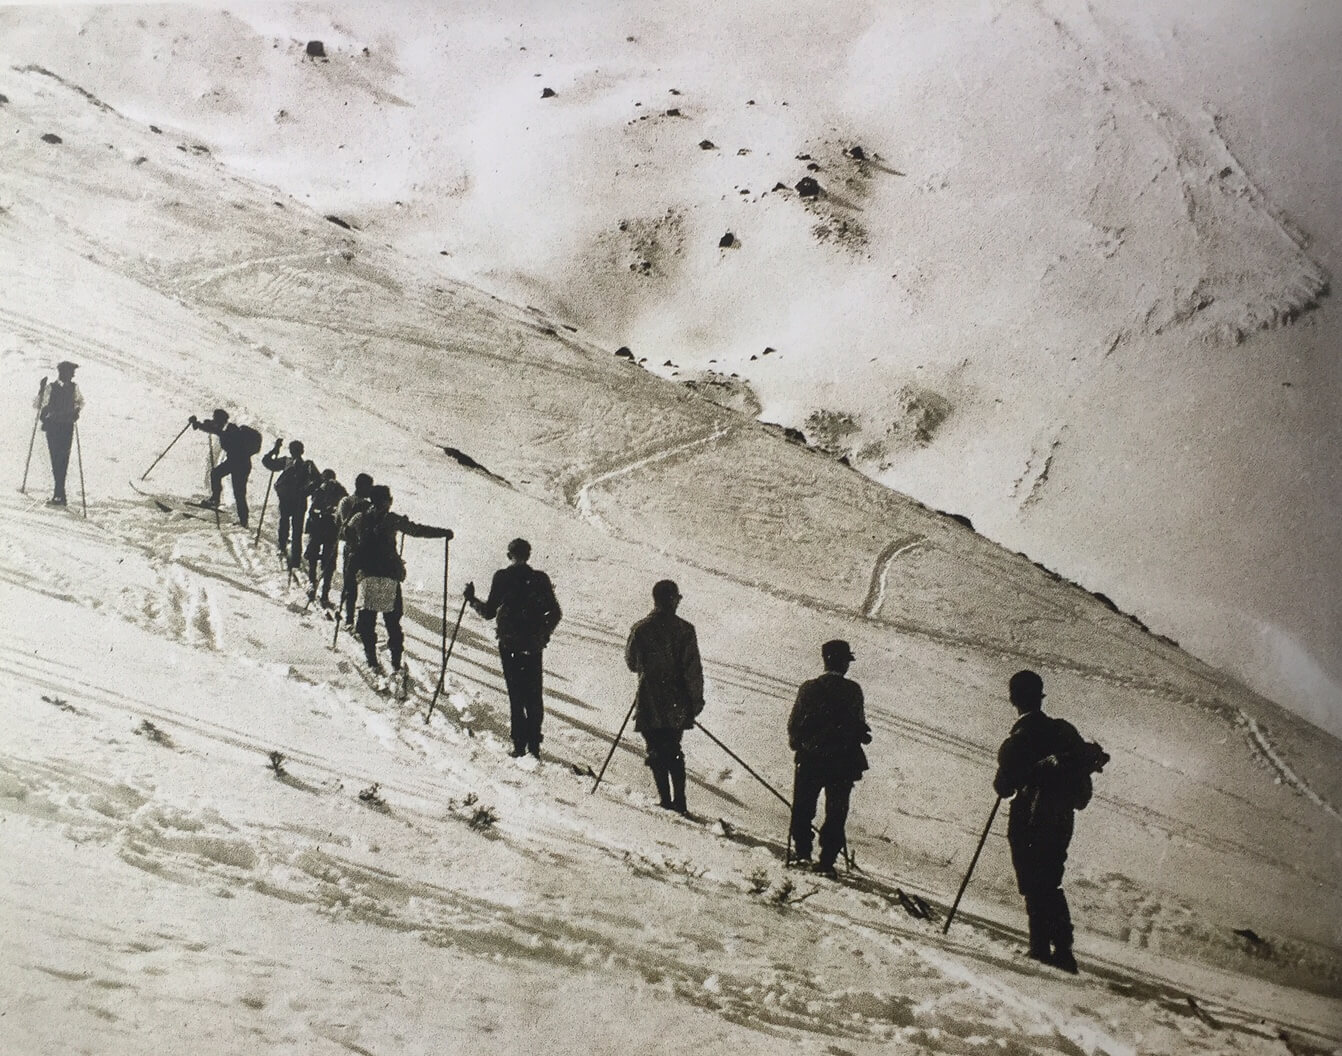 Después de un viaje de varias horas de esfuerzo, los pioneros de Farellones podían descender una sola vez en esquíes de madera (© CAF)